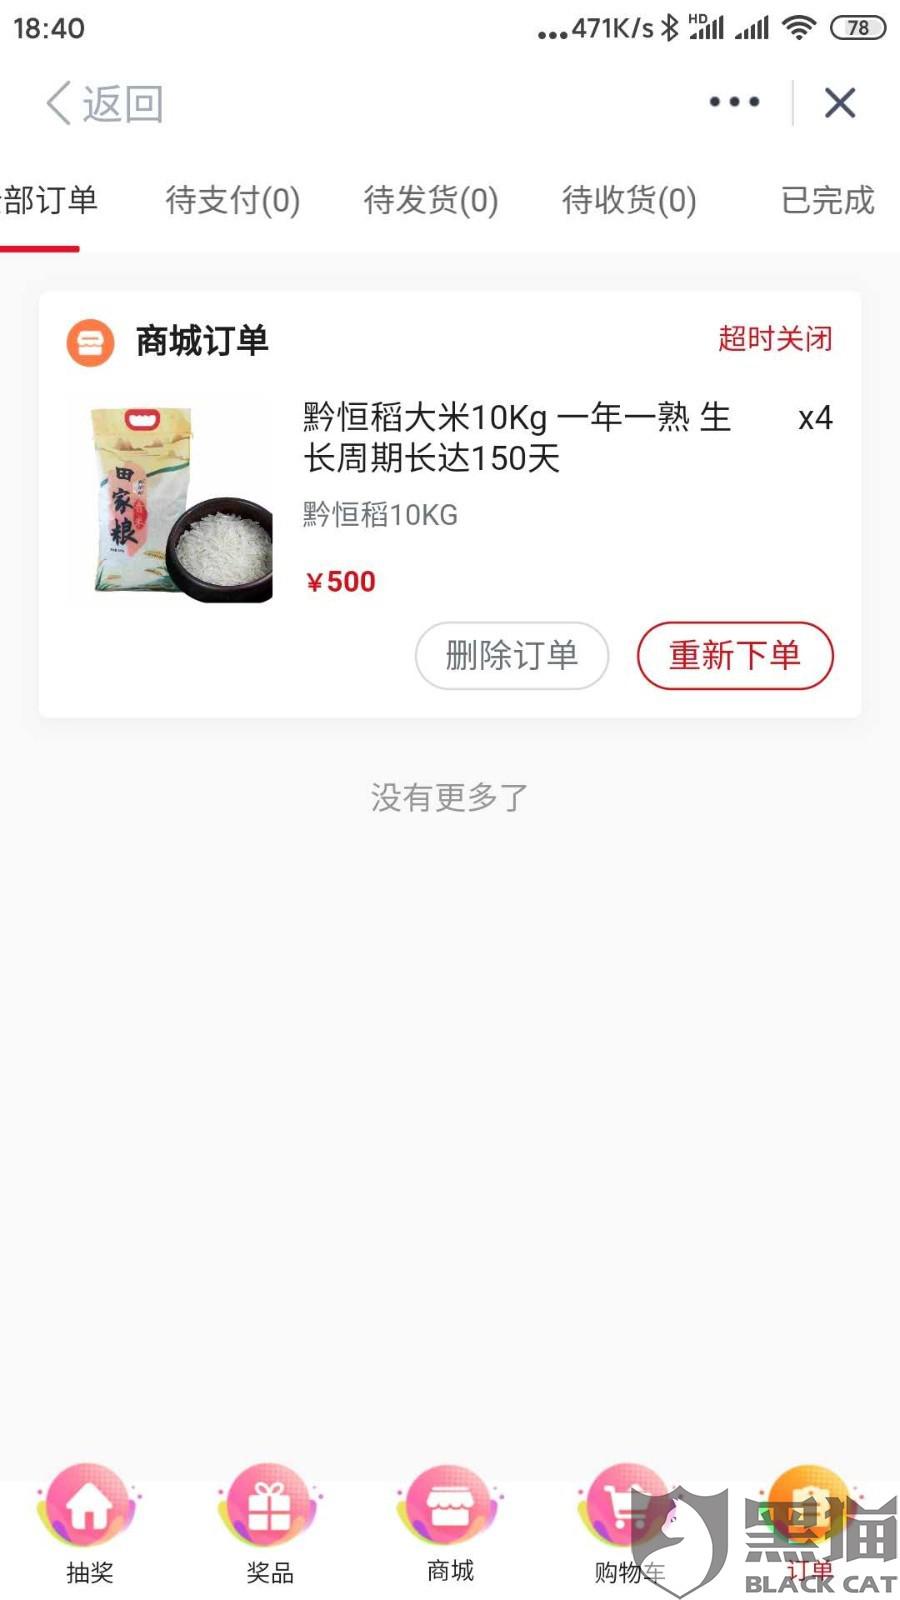 黑猫投诉 在云上贵州多彩宝购买500元商品 微信支付后找不到订单 热备资讯